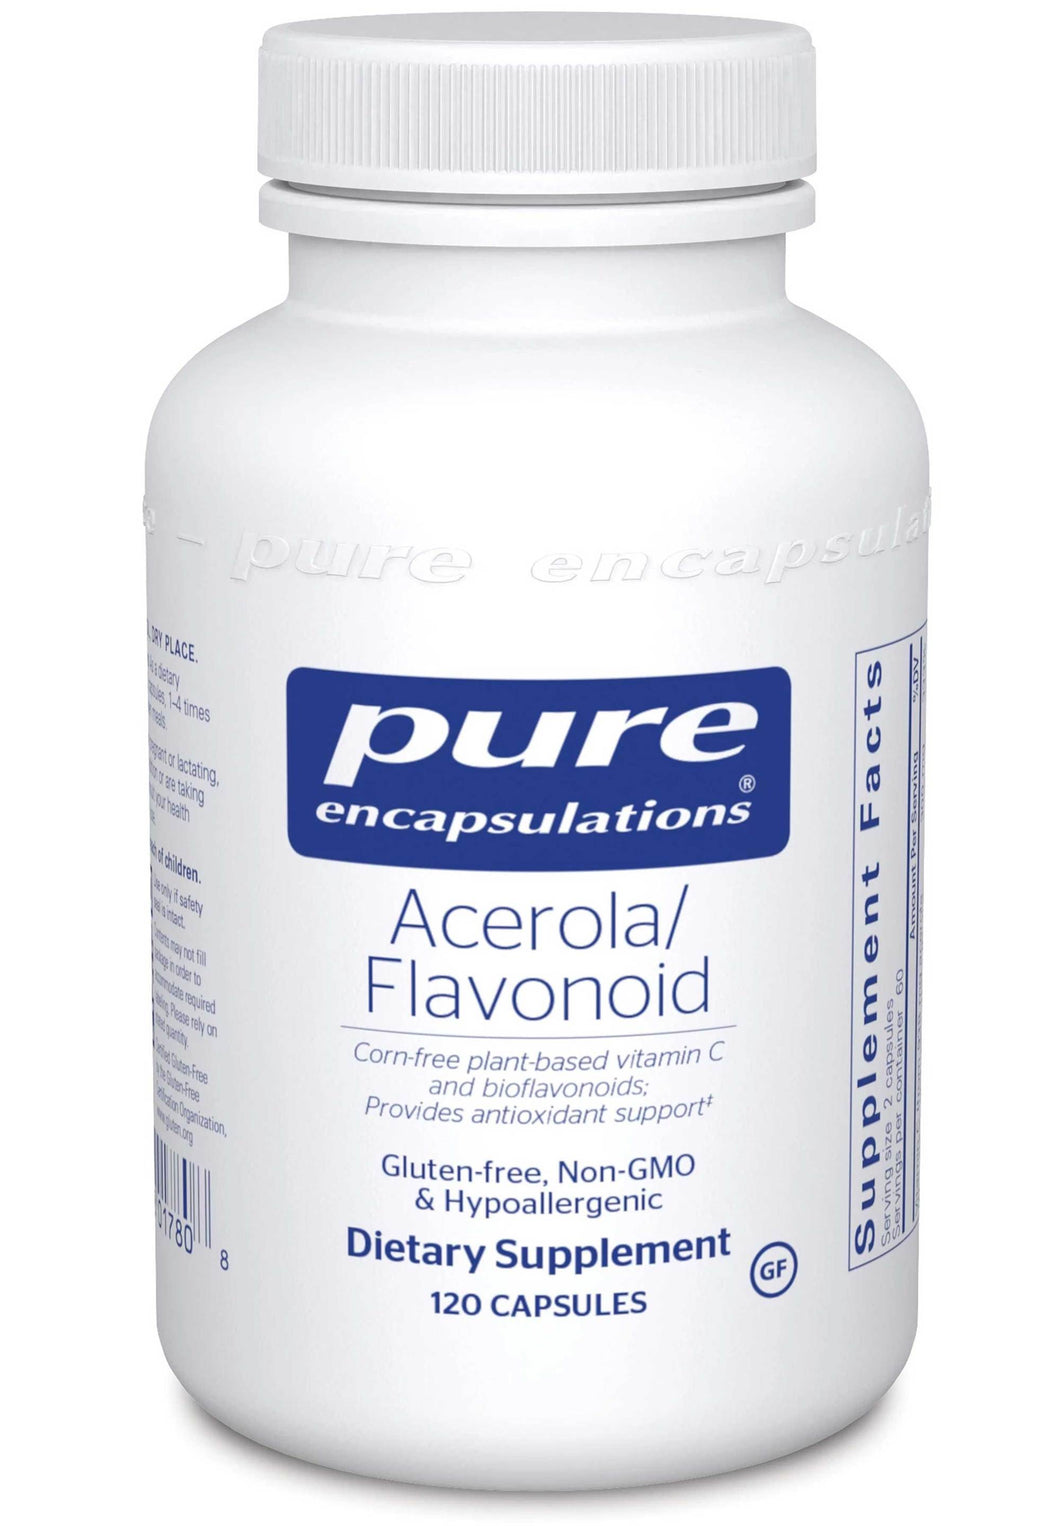 Pure Encapsulations Acerola/Flavonoid 120caps